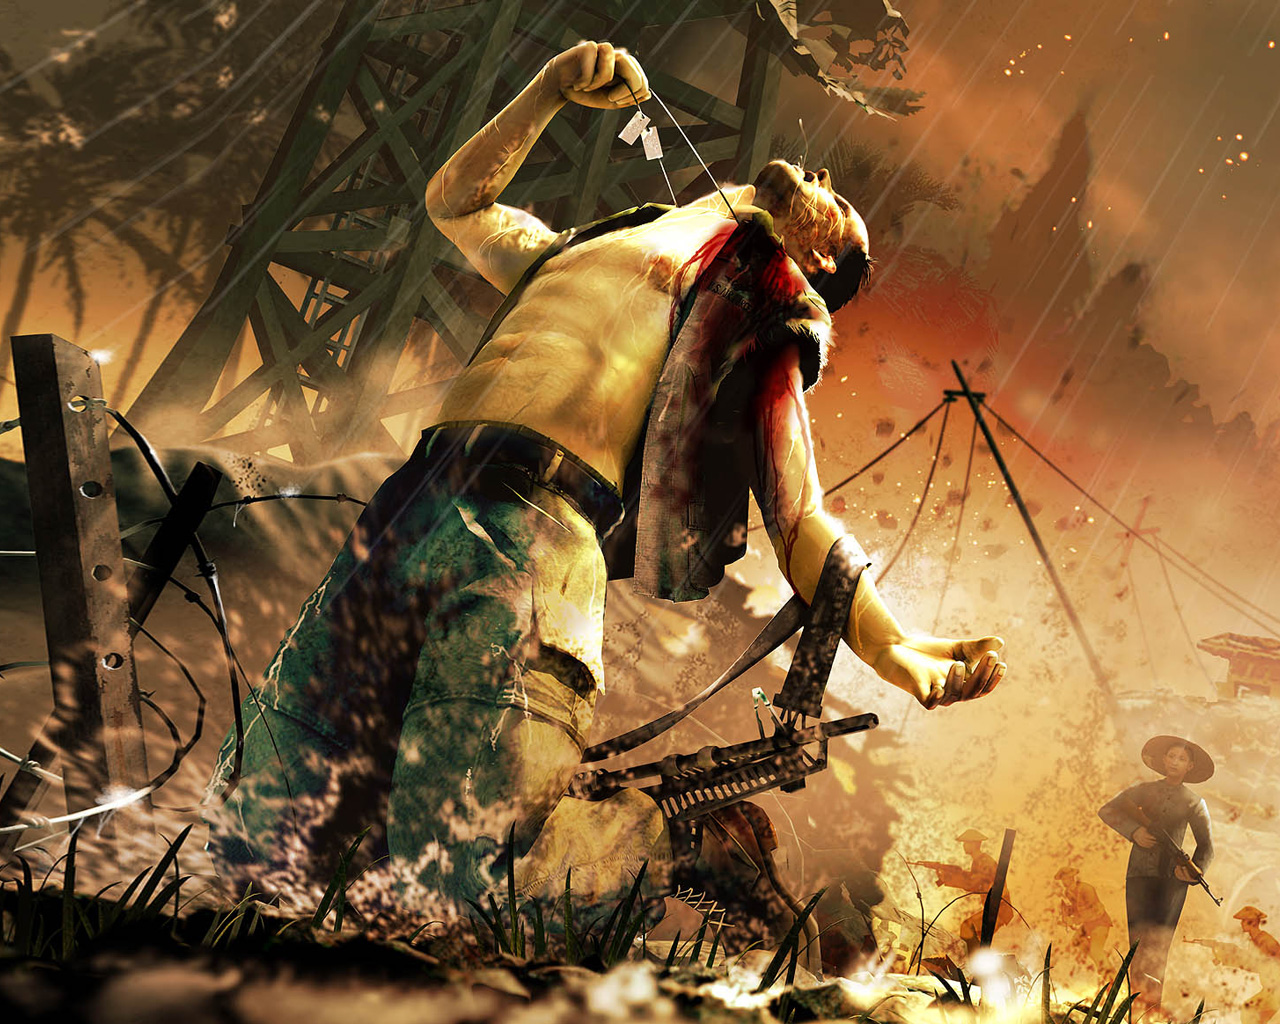 Previous, Games - Far Cry 2 wallpaper